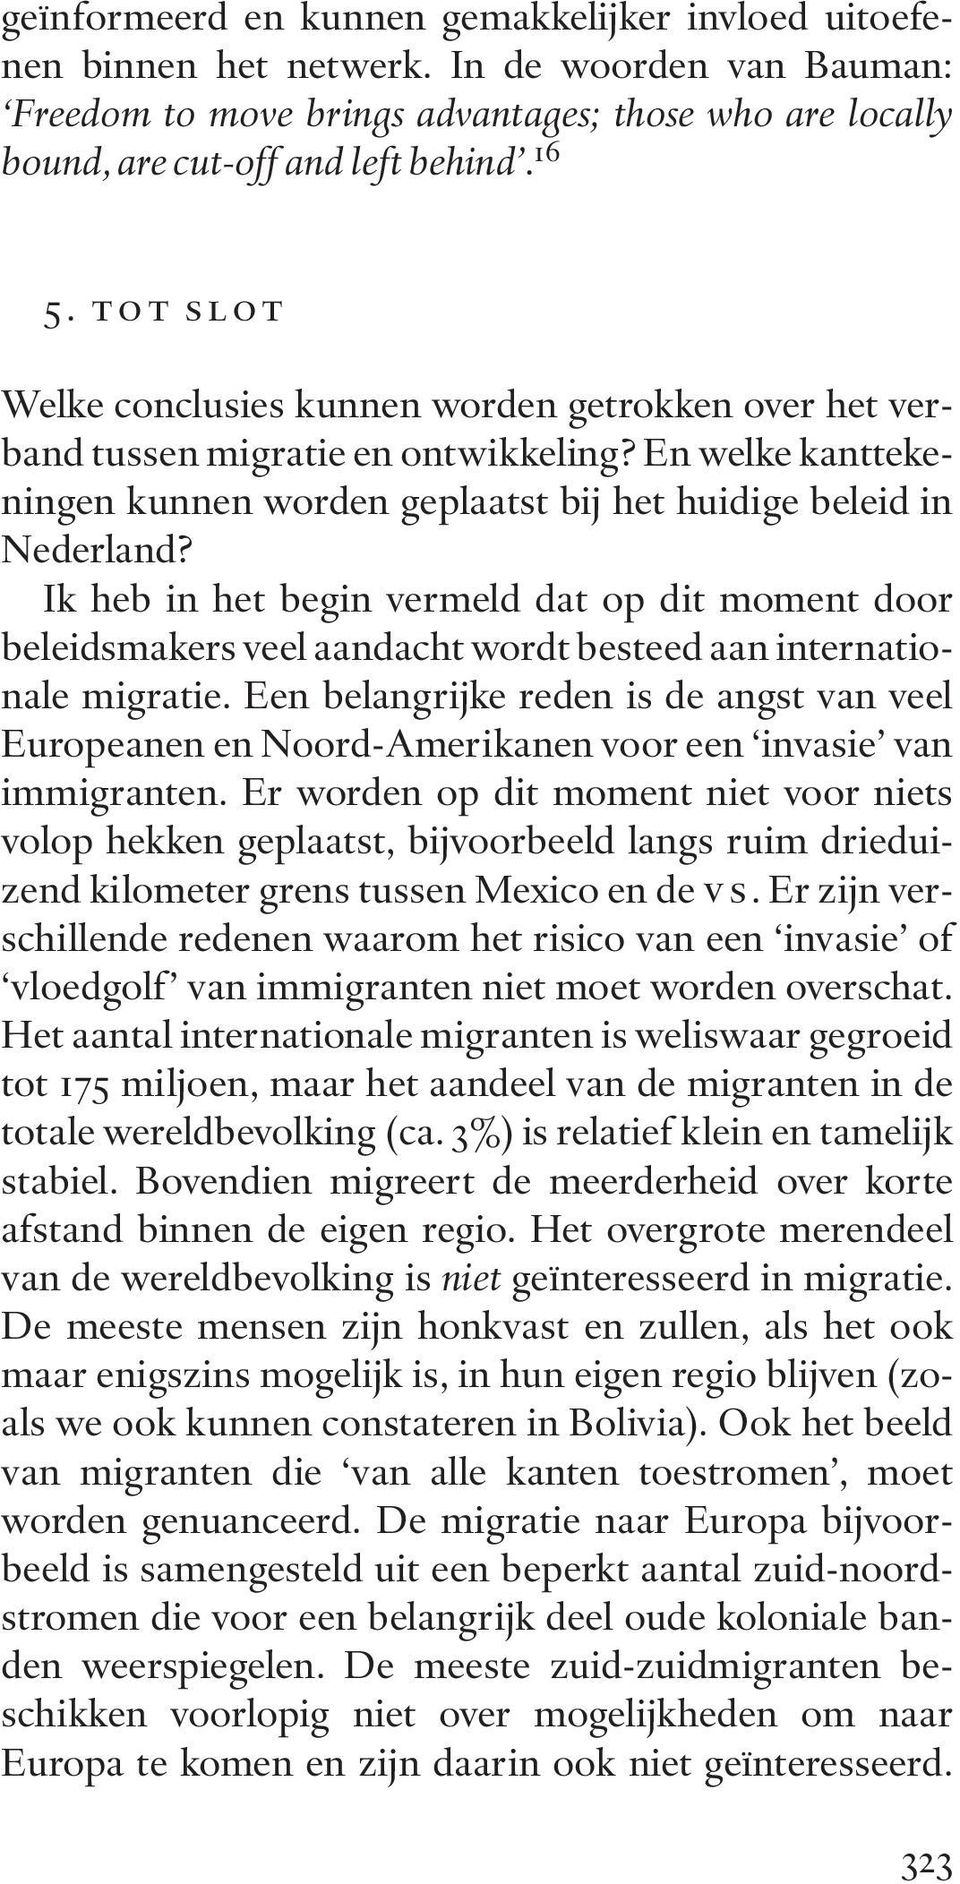 Ik heb in het begin vermeld dat op dit moment door beleidsmakers veel aandacht wordt besteed aan internationale migratie.